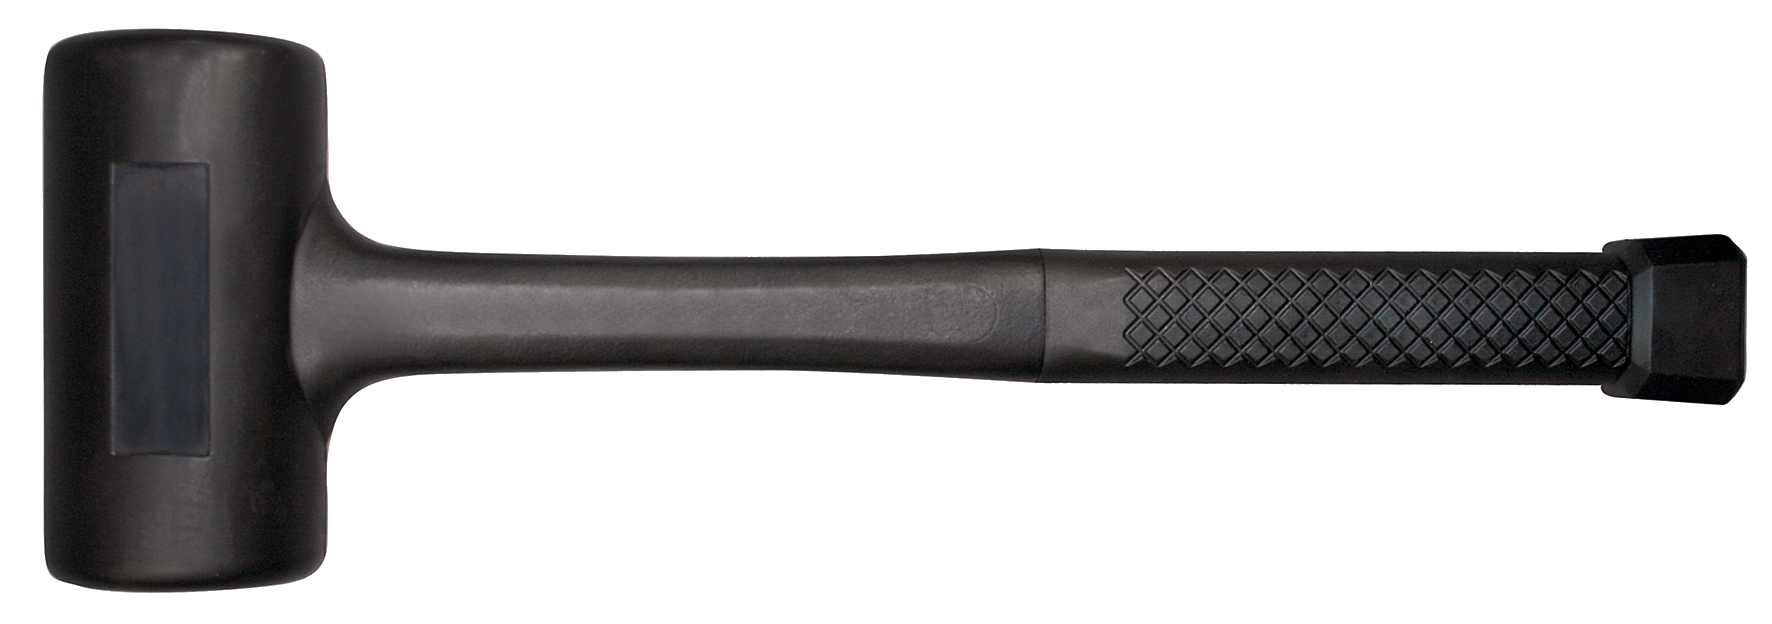 SWSTAHL Non-recoil hammer, 1200 g, 60 mm 51112L